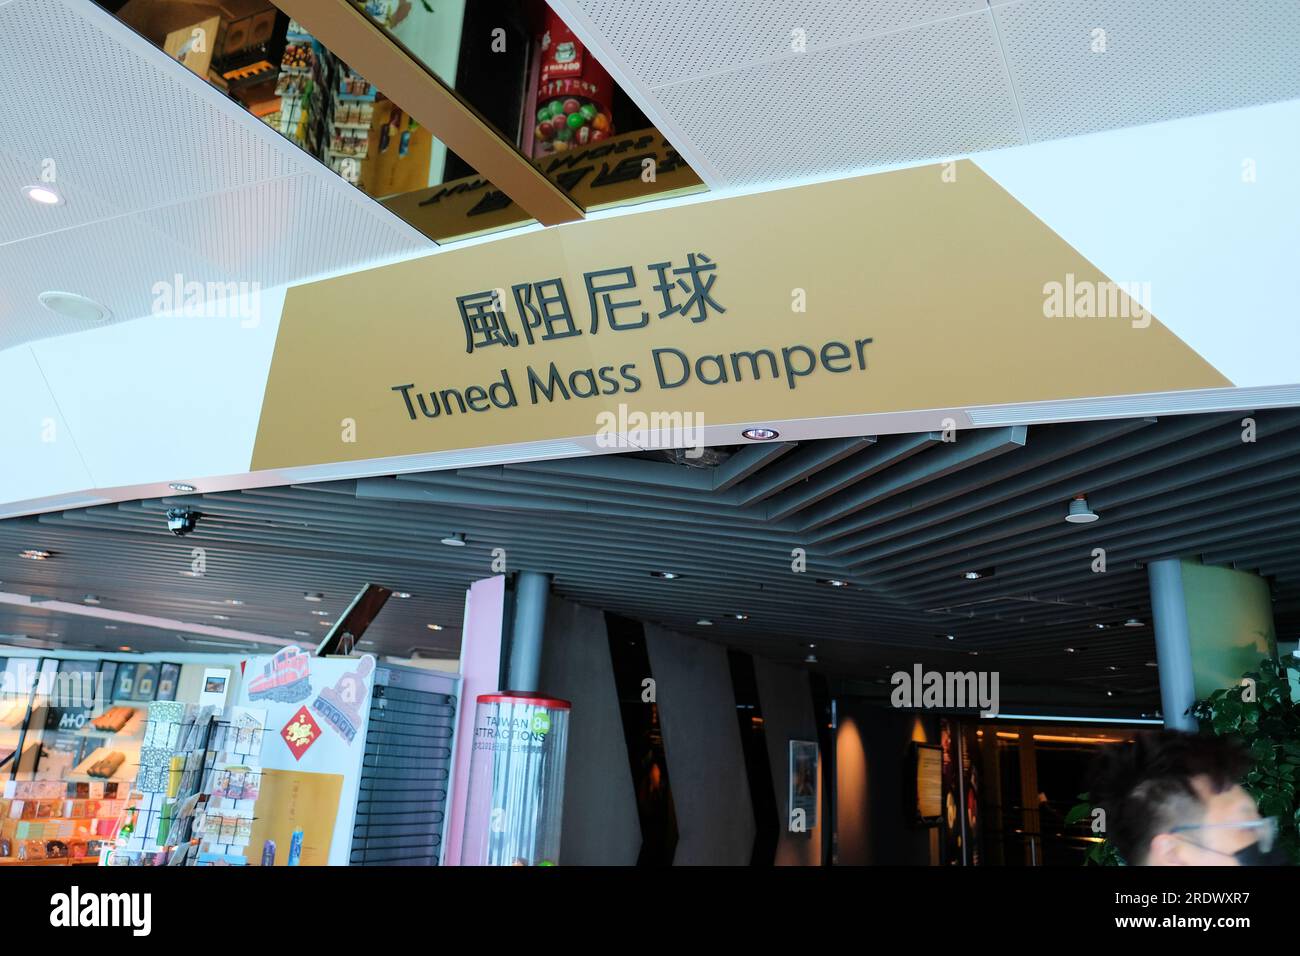 Schild am abgestimmten Schwingungsdämpfer, der verwendet wurde, um sich gegen heftige Bewegungen zu stabilisieren, die durch harmonische Vibrationen am Taipei 101-Gebäude in Taipei, Taiwan, verursacht wurden. Stockfoto